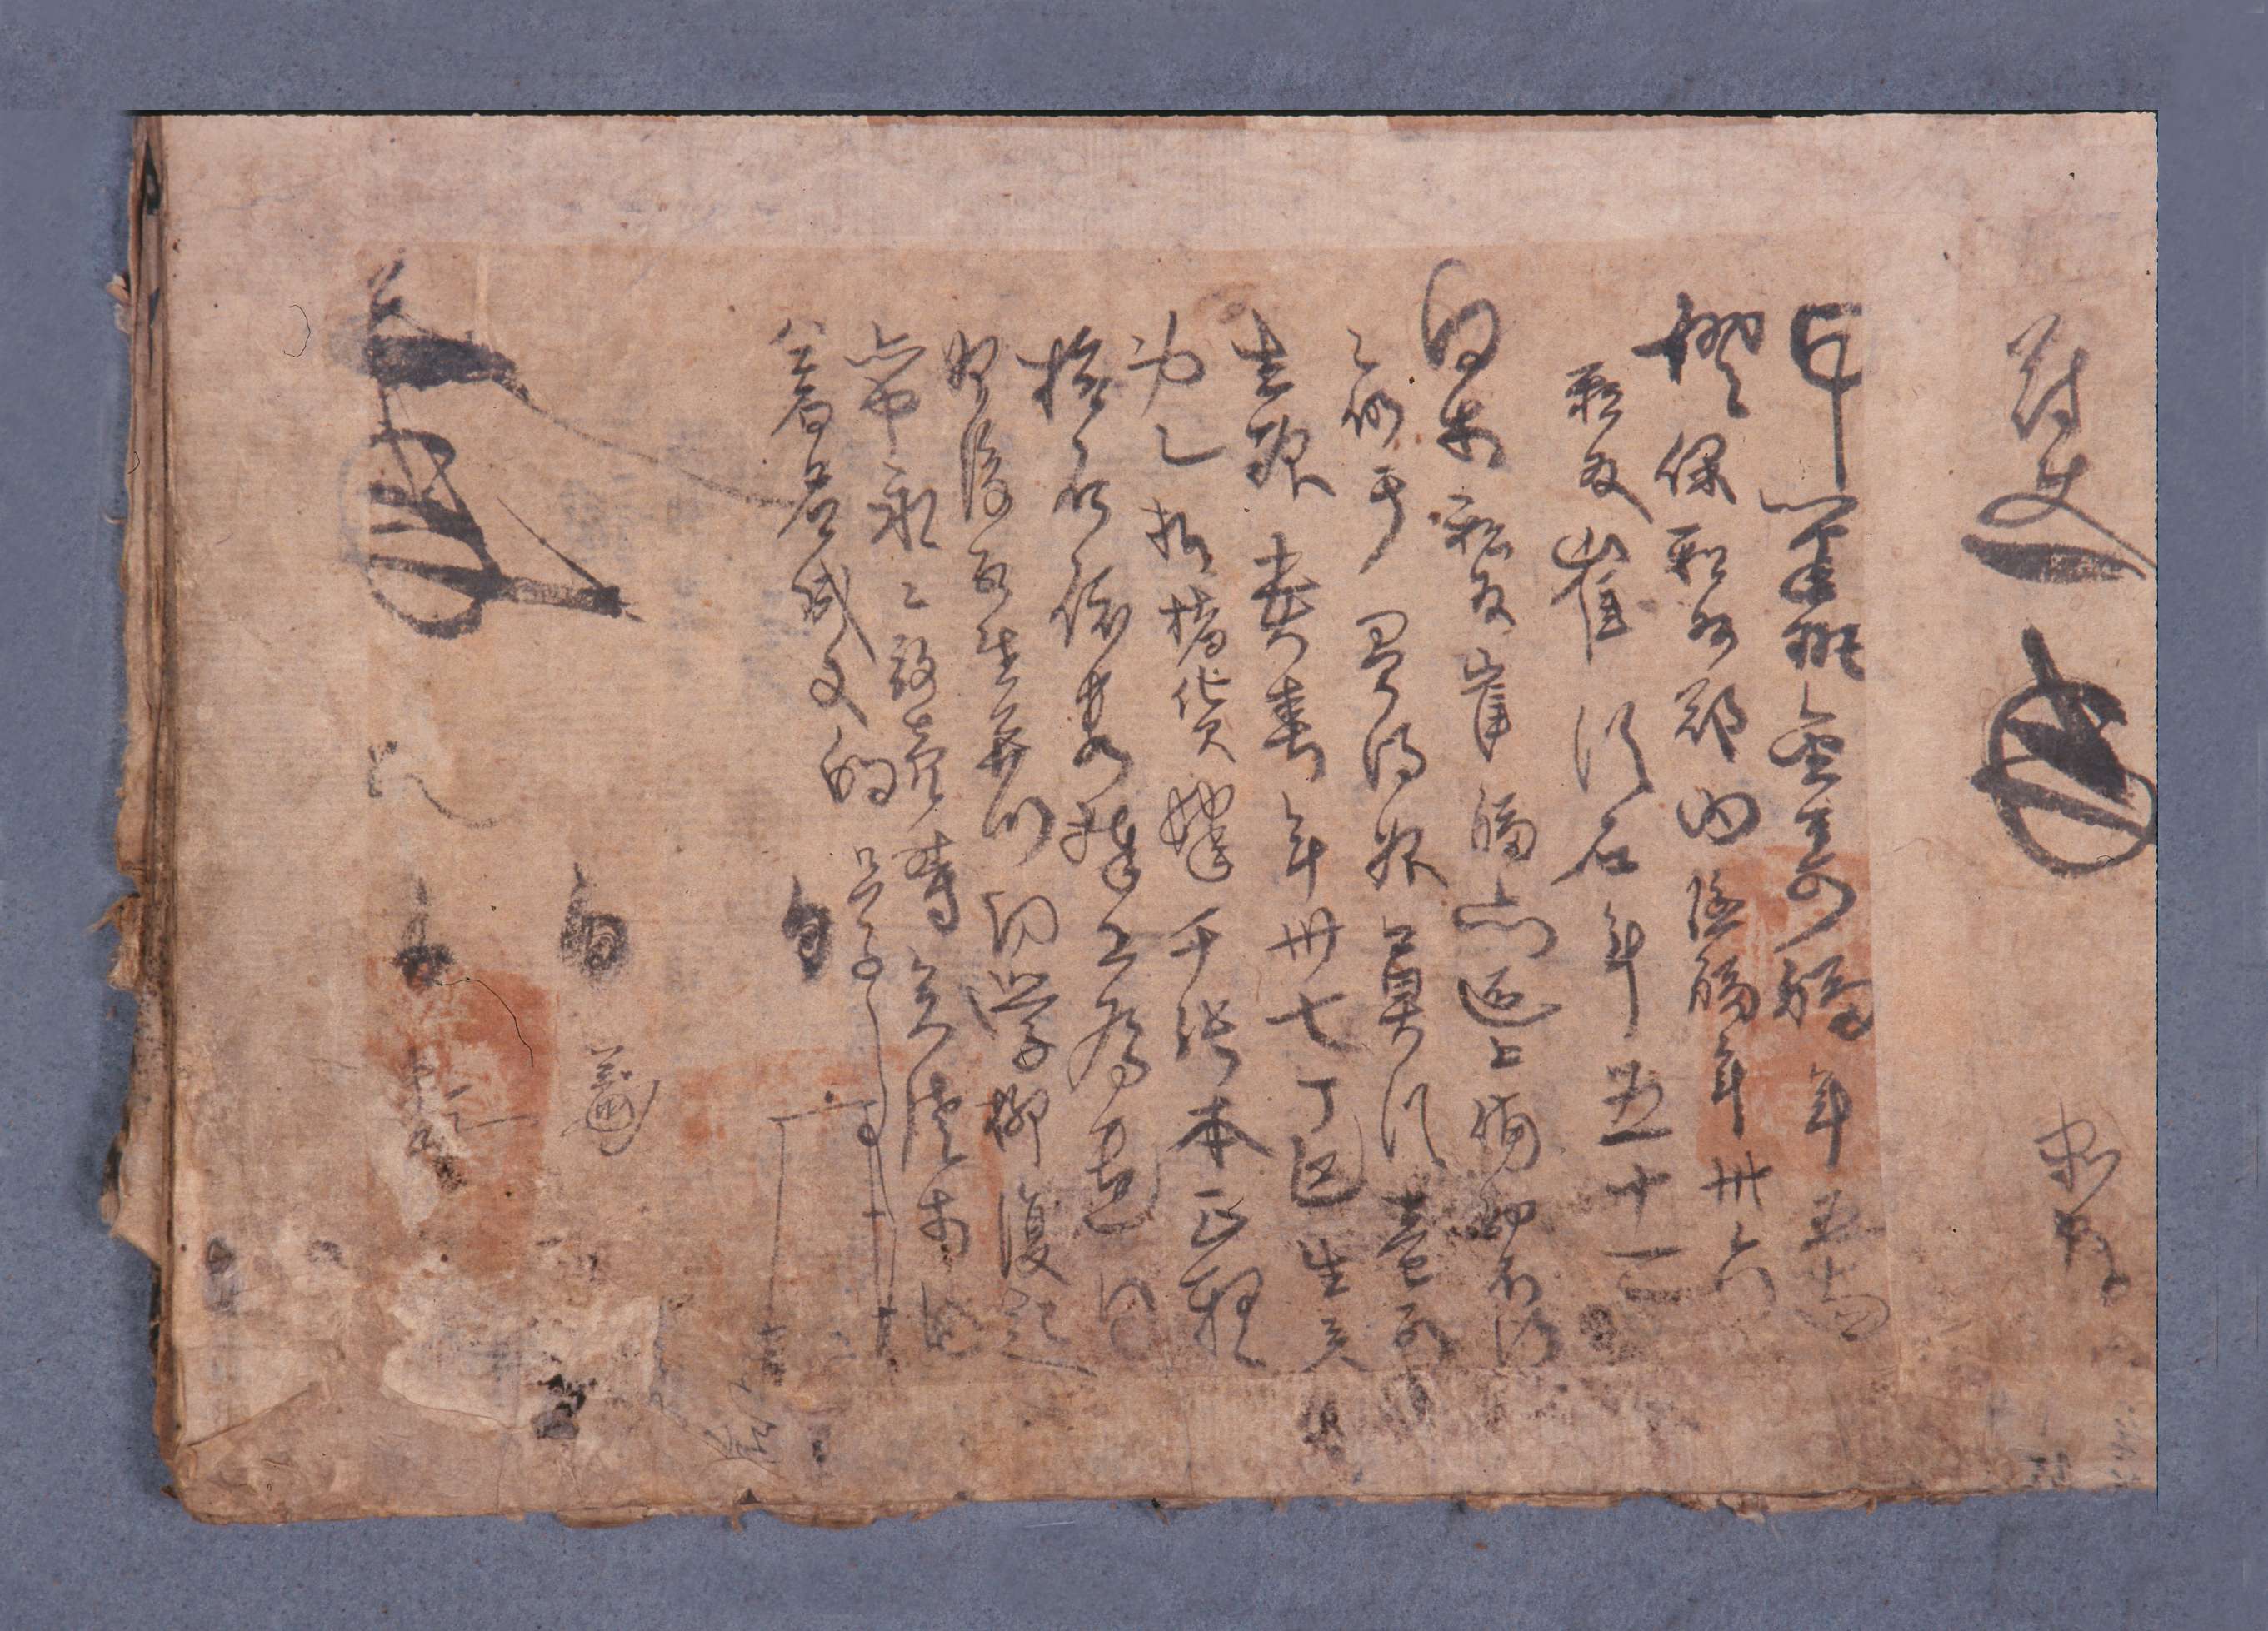 1594년에 김수복 등이 관에 노비매매 건에 관하여 진술한 초사